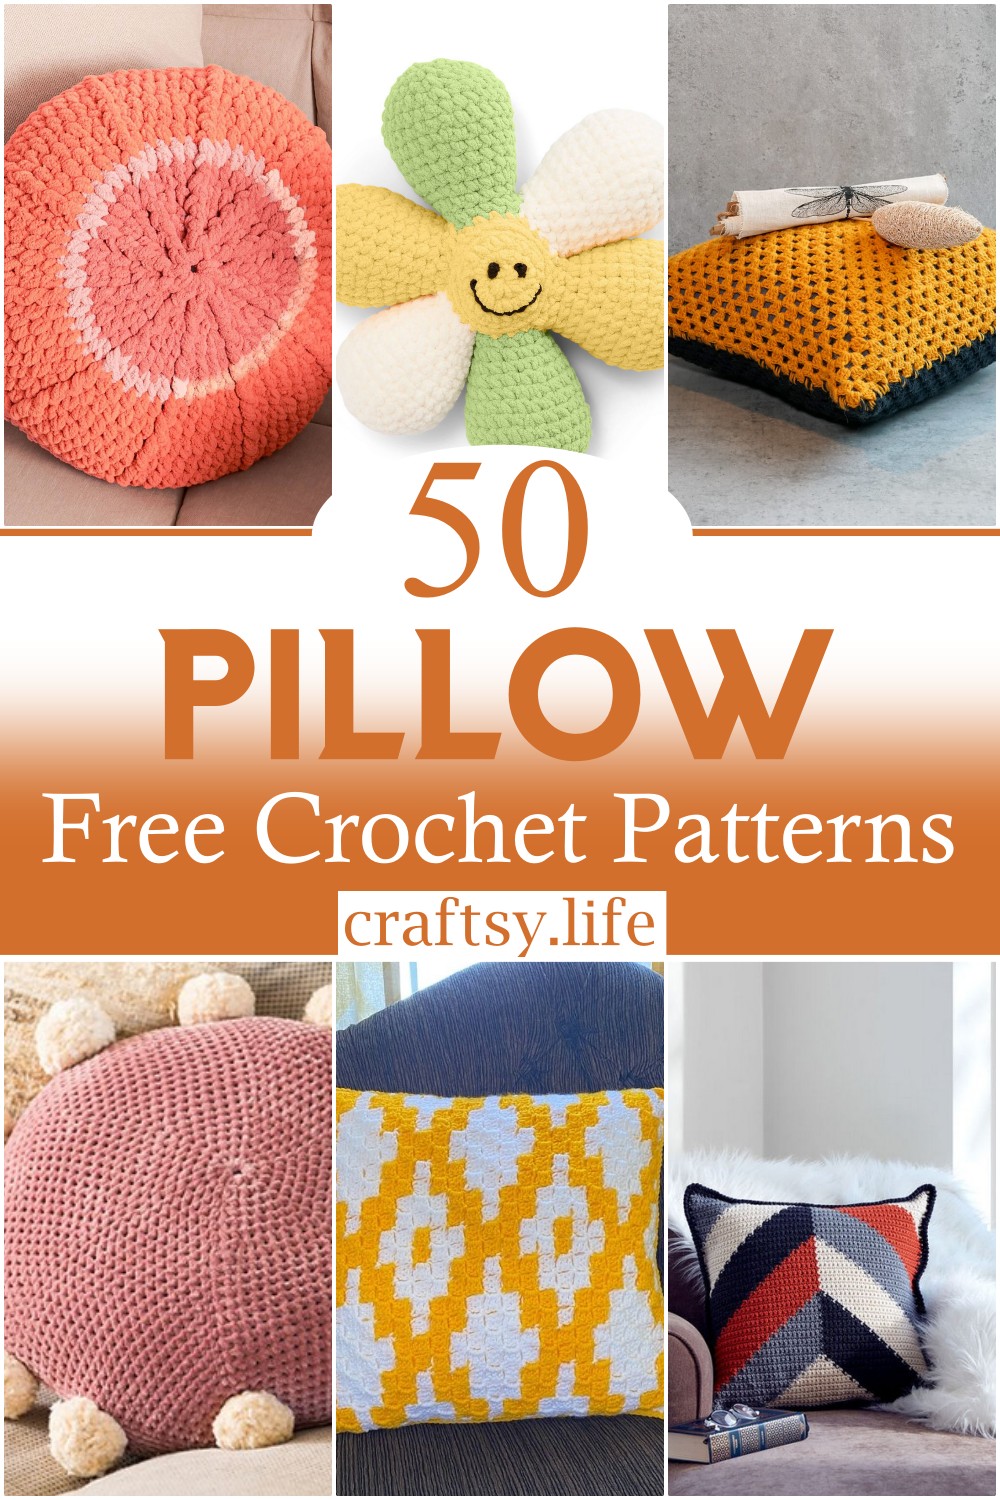 Free Crochet Pillow Patterns 1